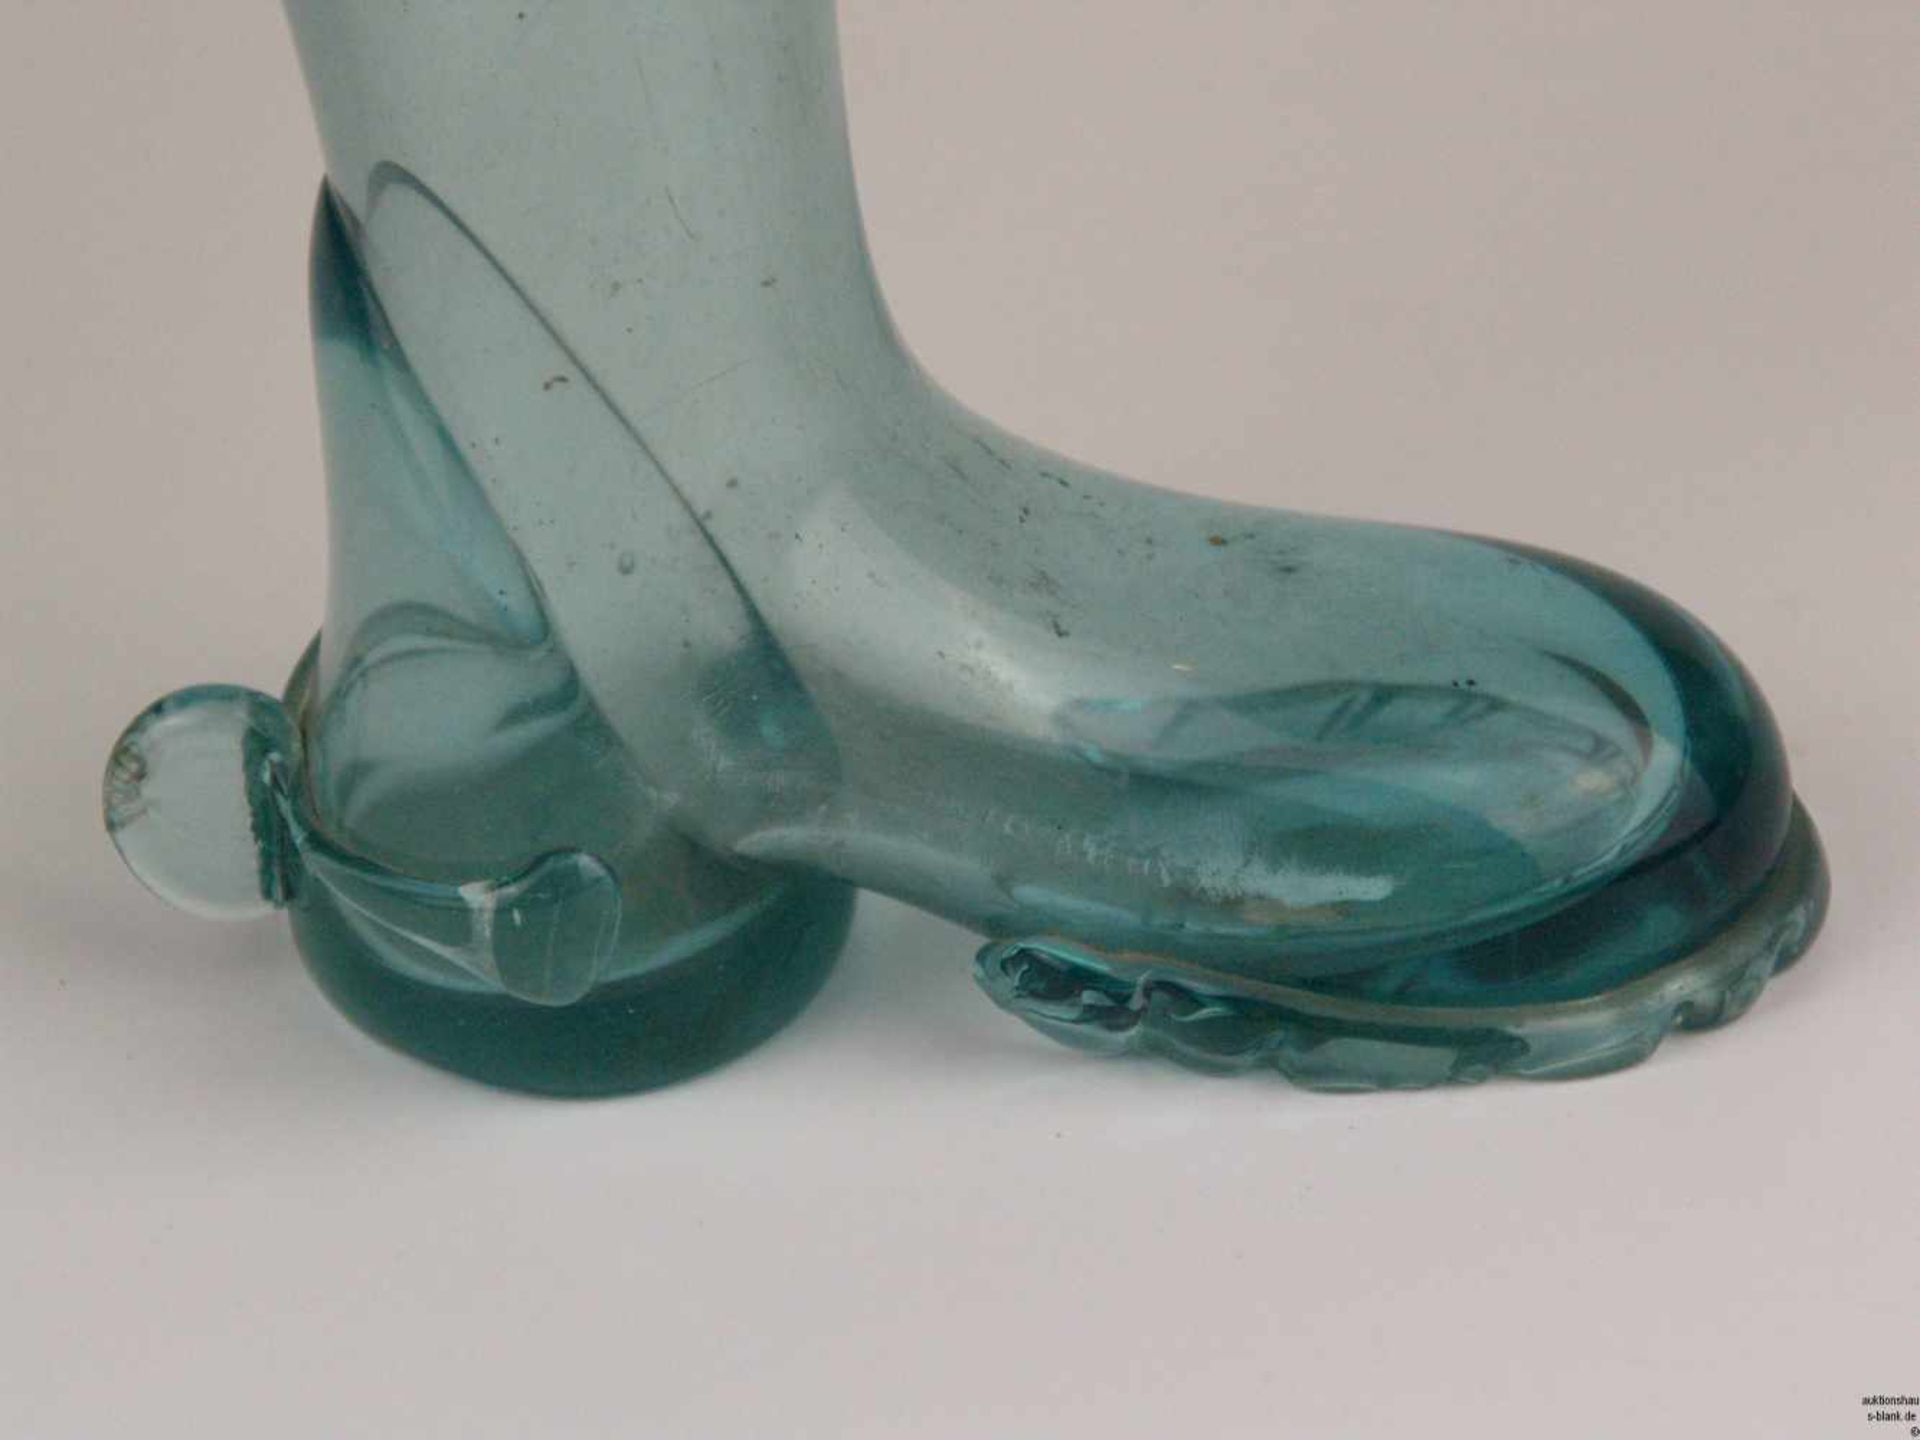 Bierstiefel - aquamarin farbiges Glas, Stiefelform, mit floralem Schliffdekor, Gebrauchsspuren, H. - Bild 3 aus 3